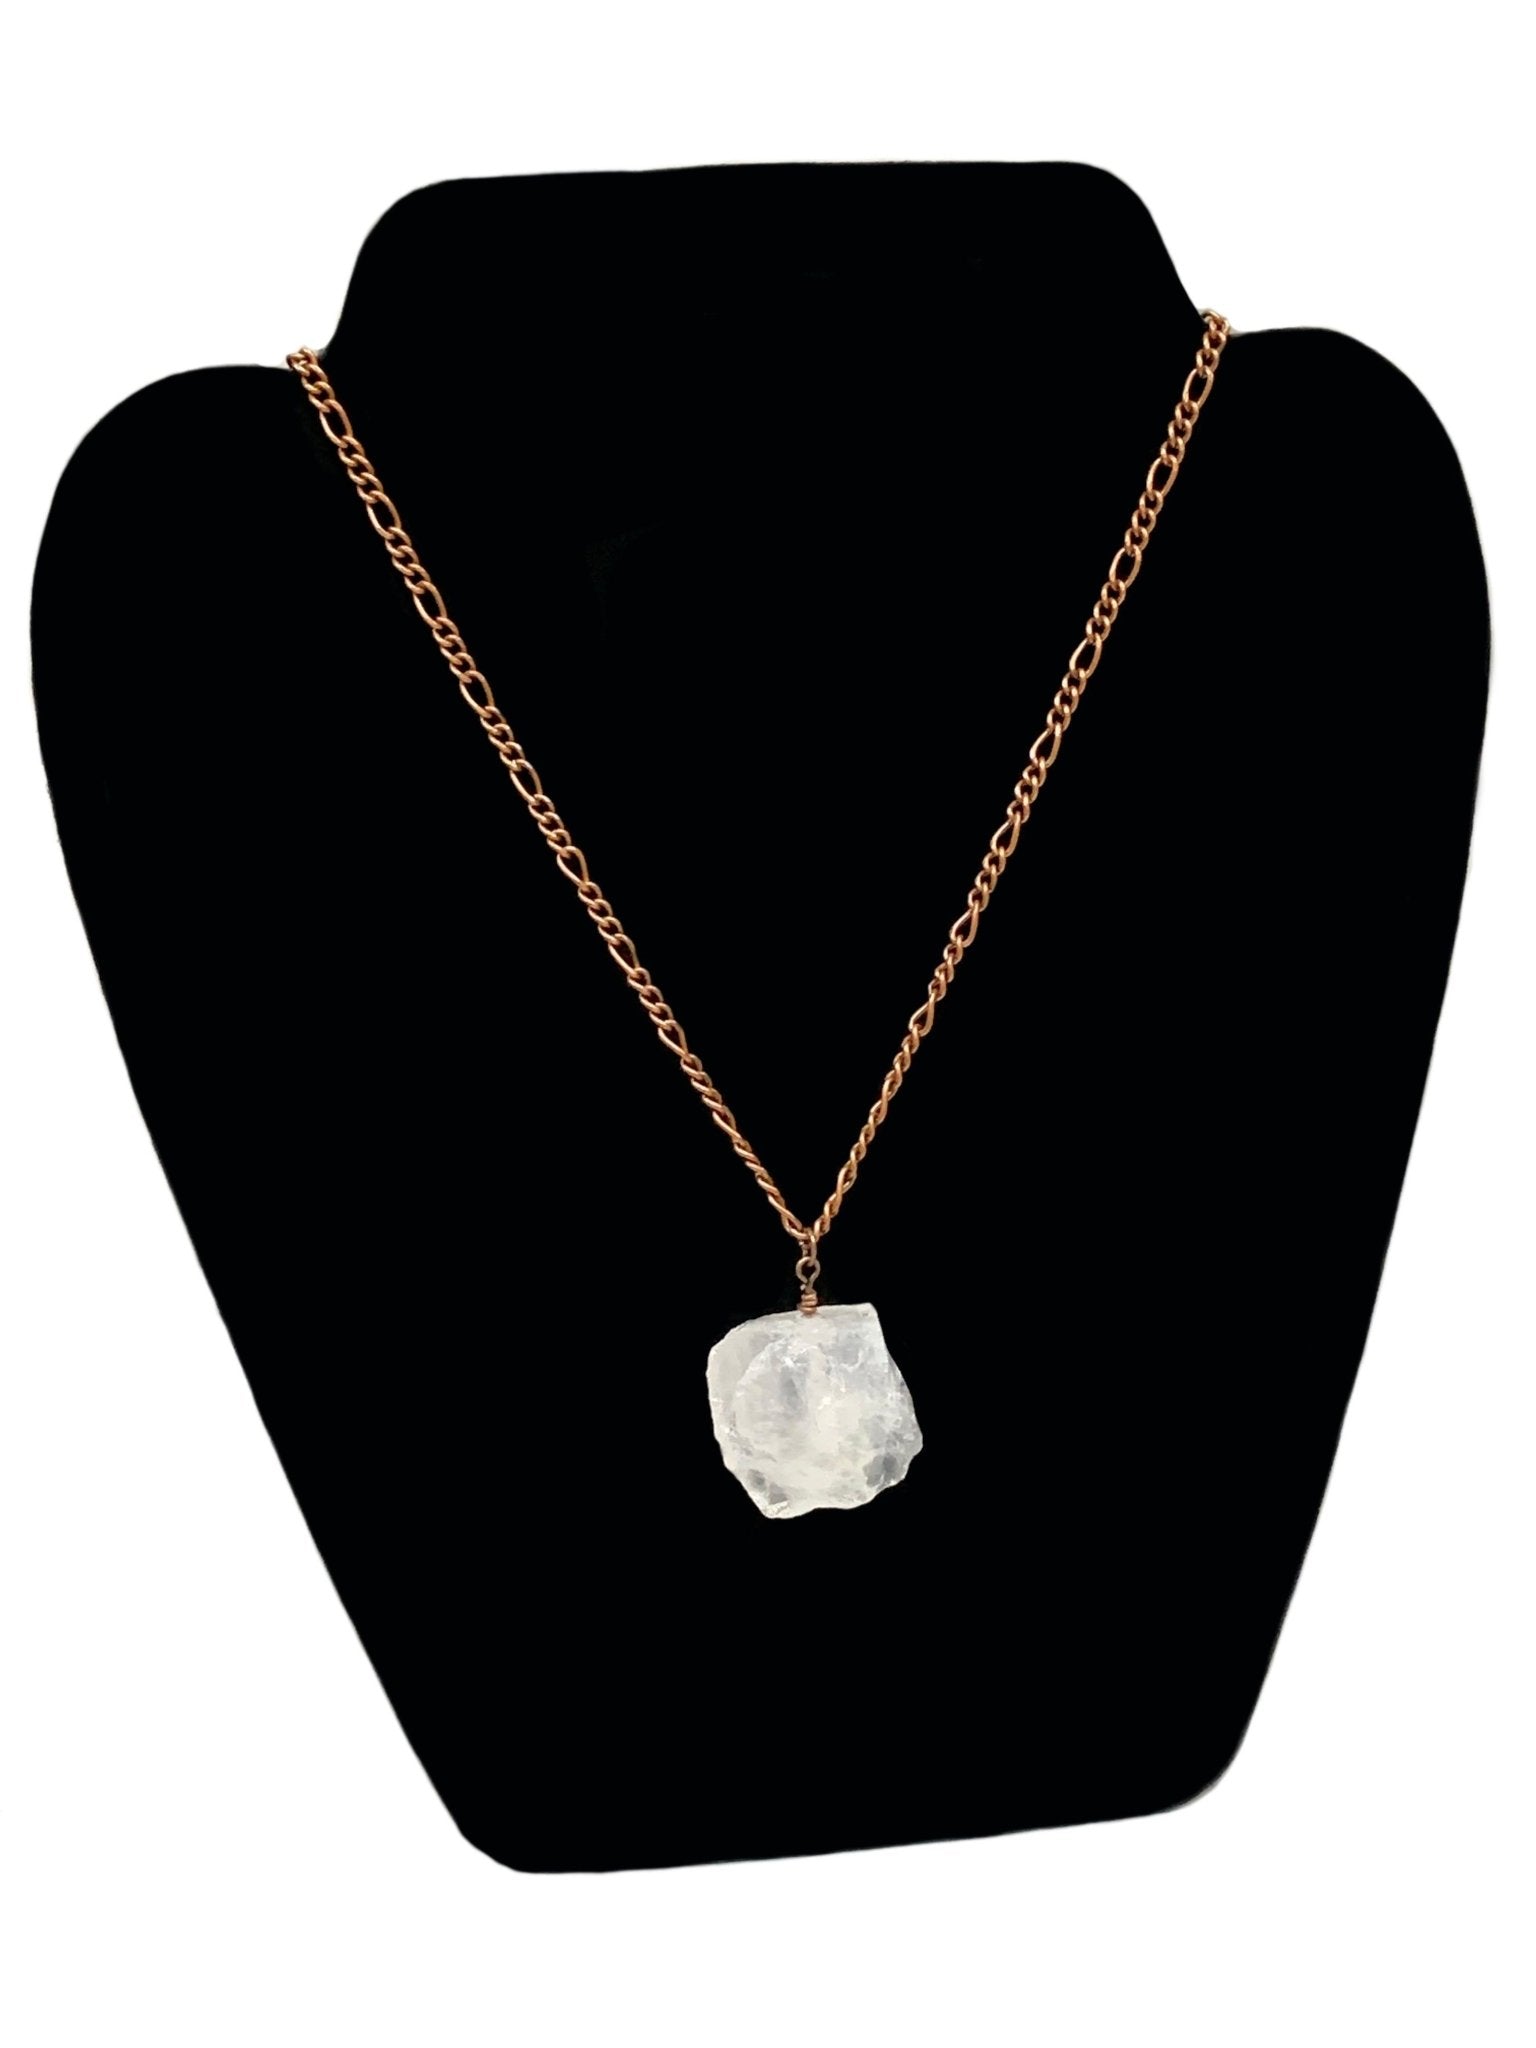 Cassiopeia Authentic Raw Clear Quartz Handmade Pendant Necklace - Born Mystics